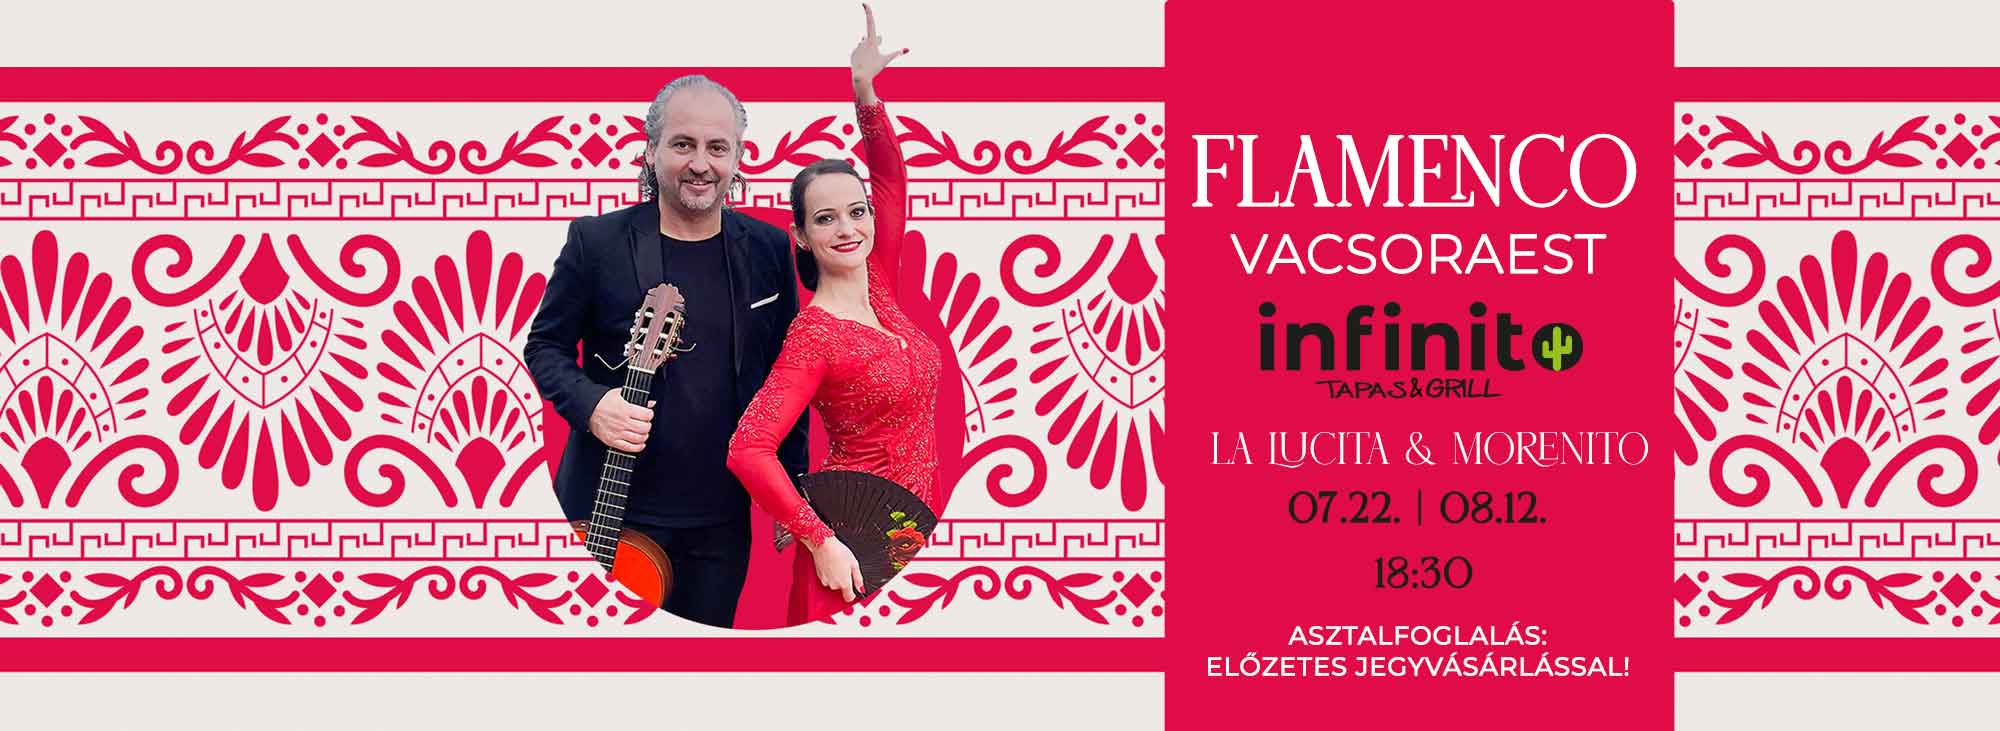 Flamenco show és vacsoraest a Taberna Infinito panoráma étteremben